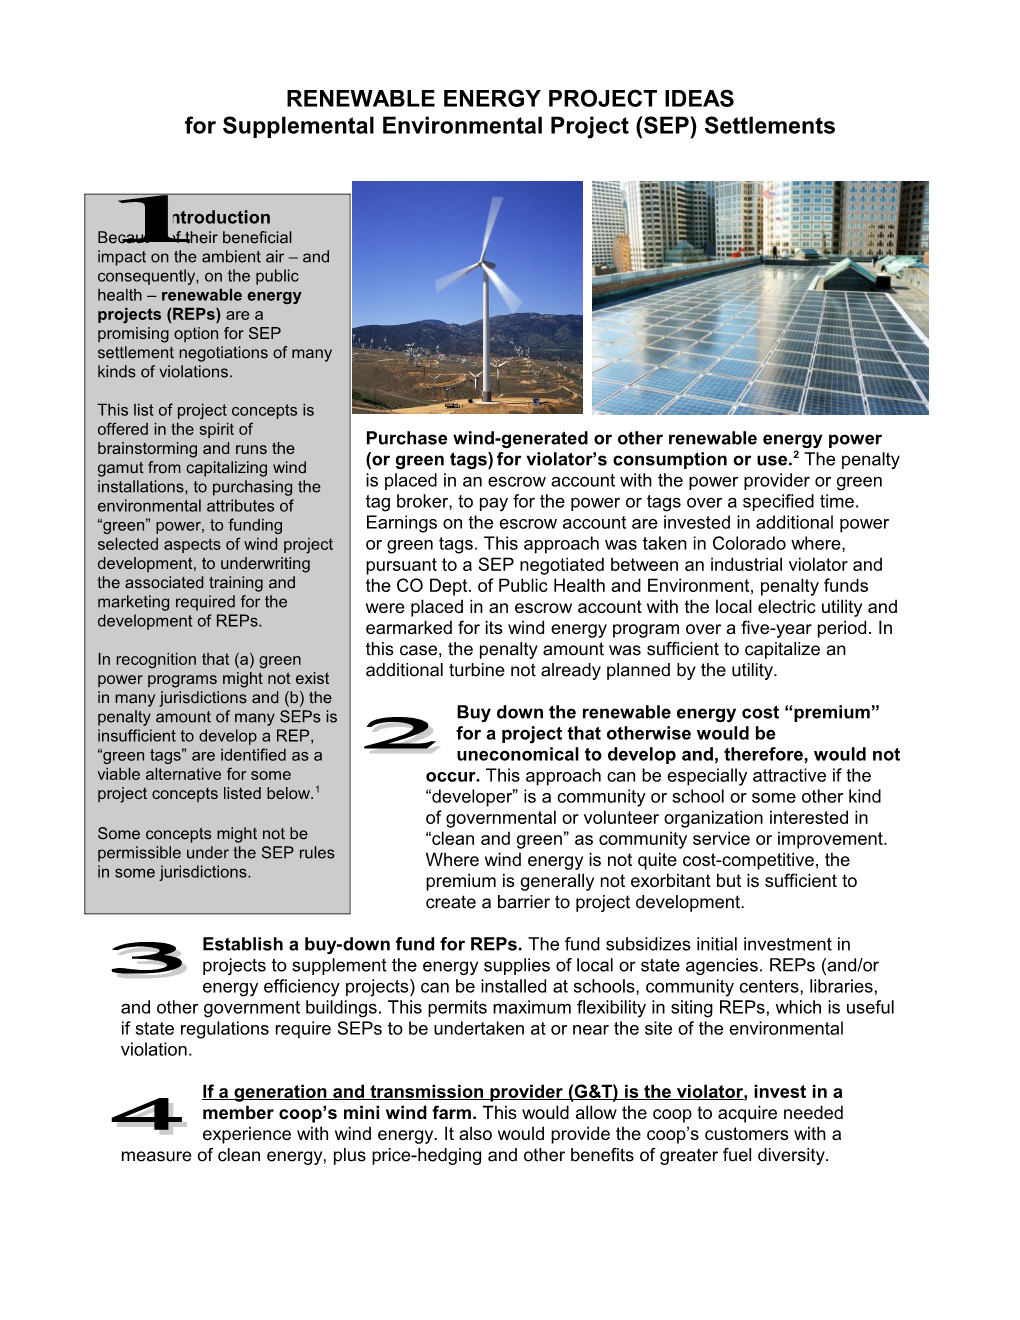 Top Ten Project Ideas: Renewable Energy